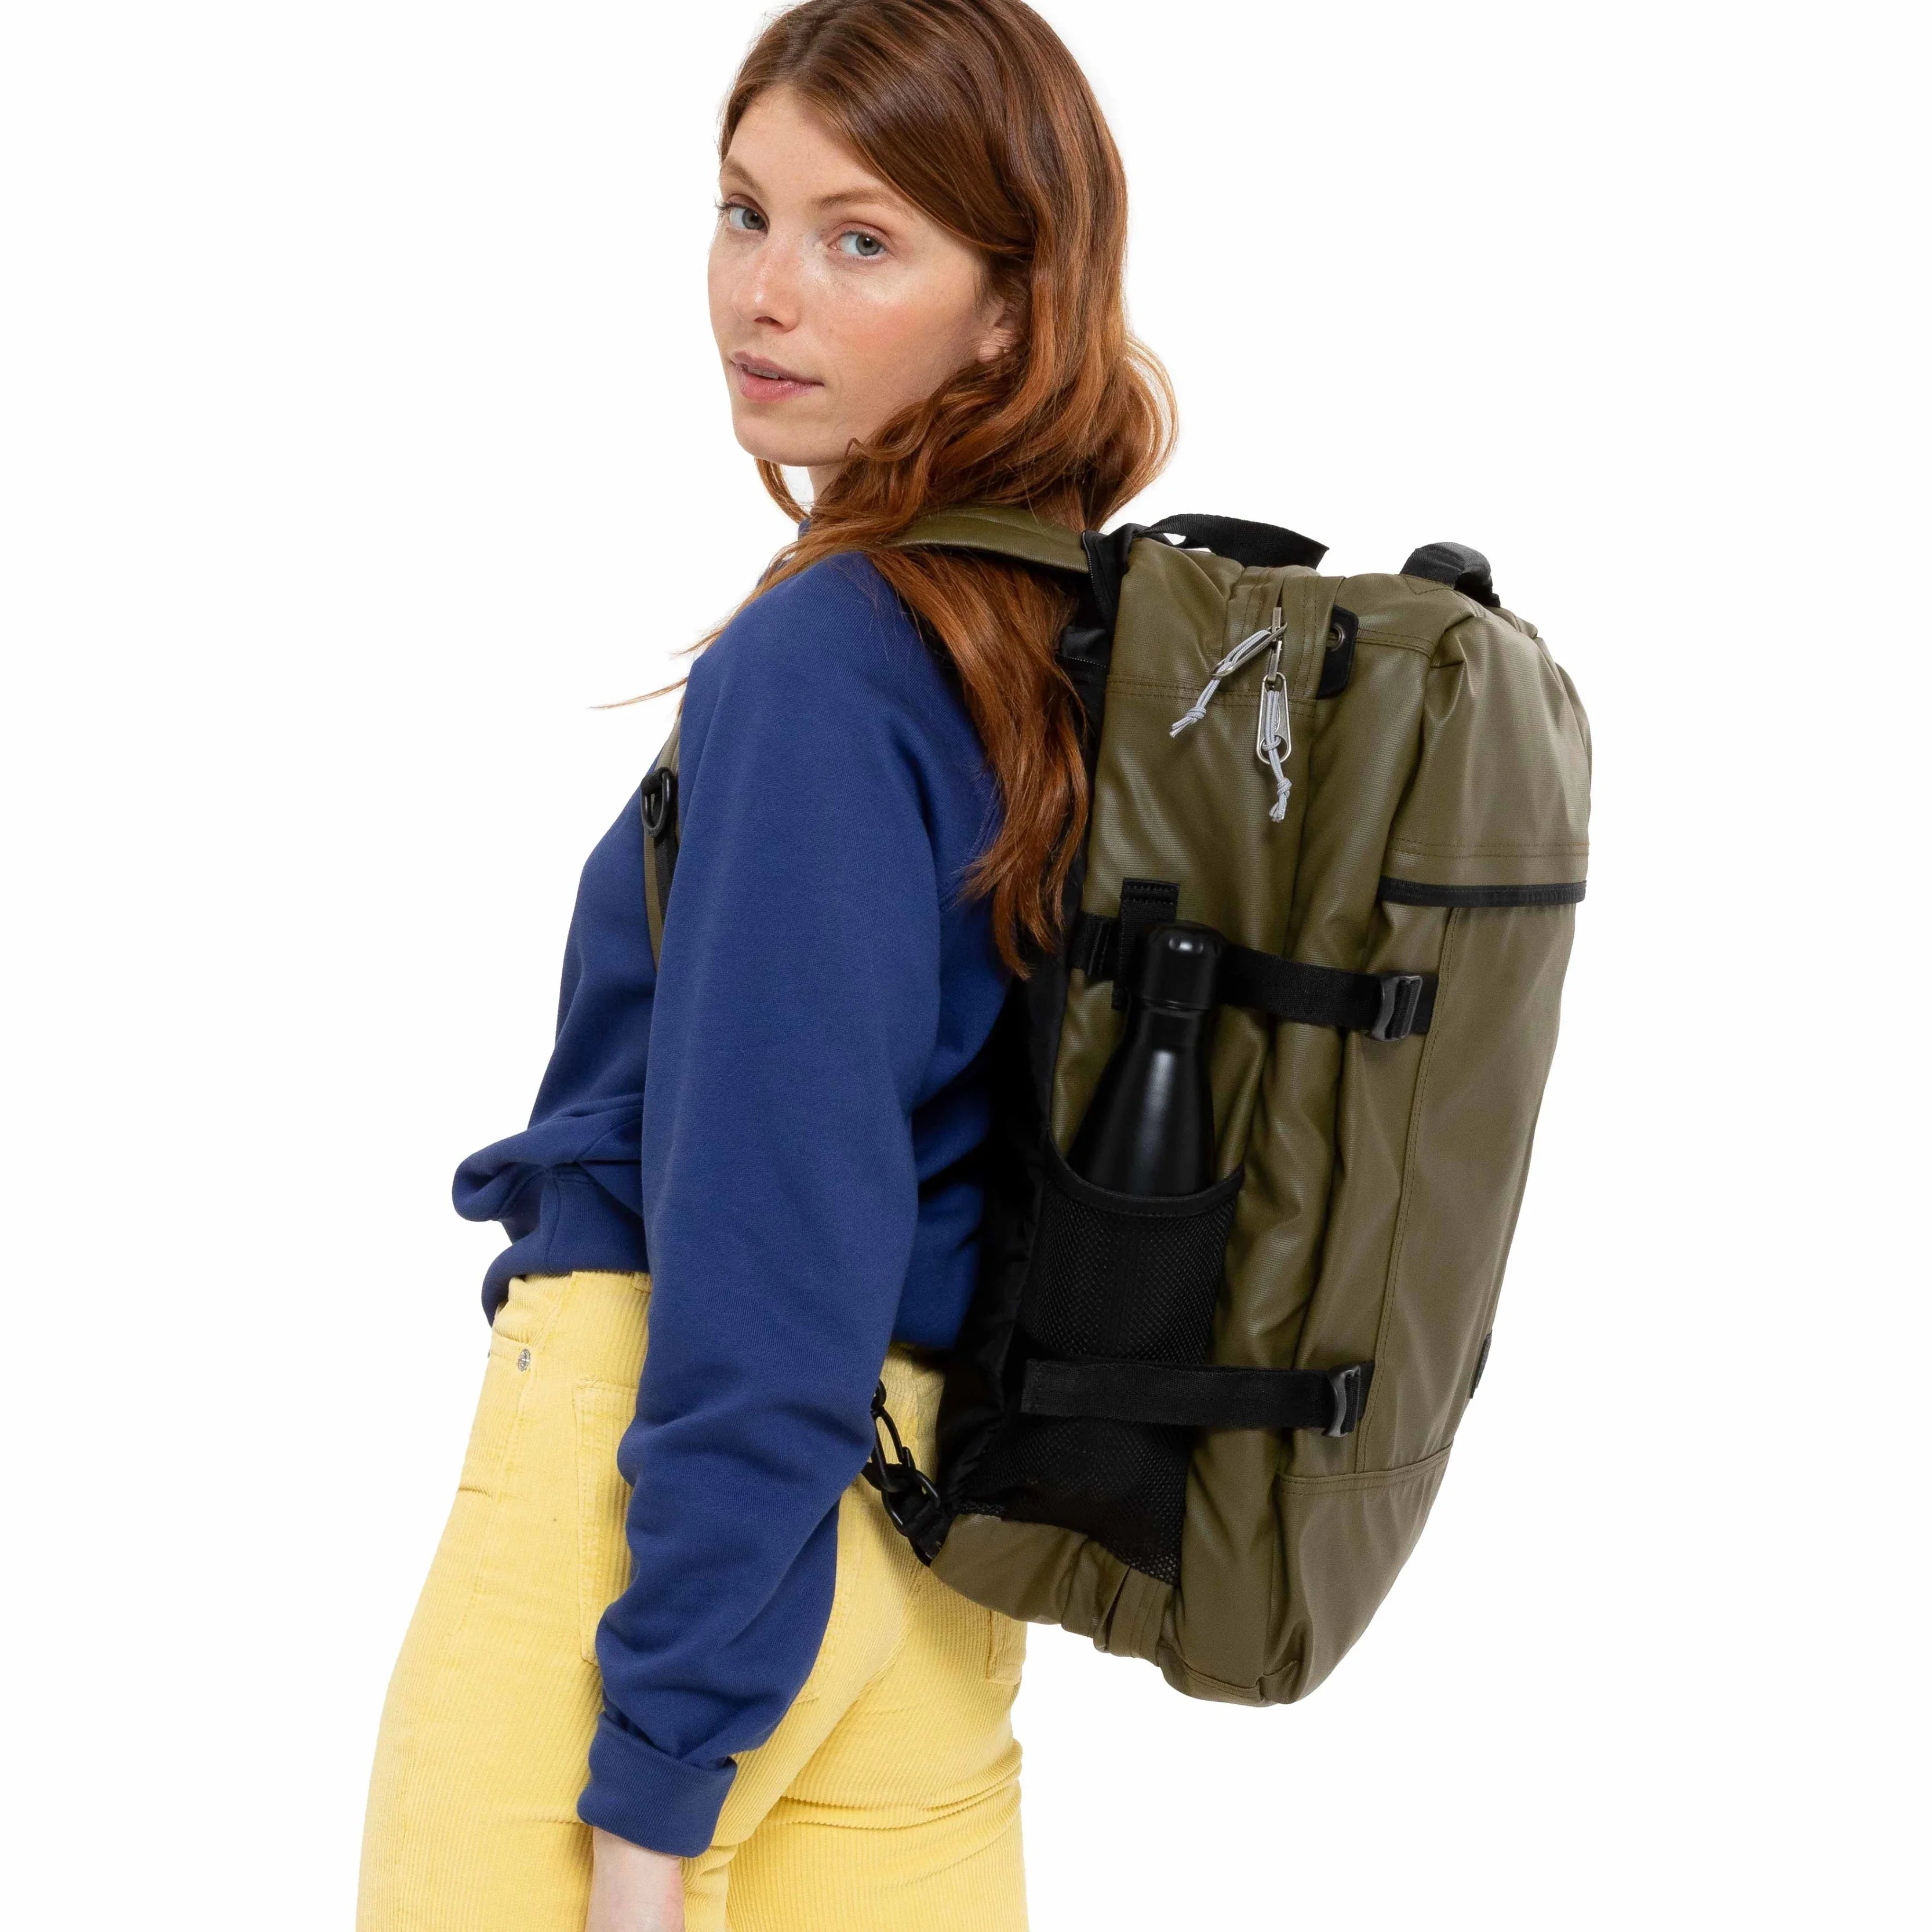 Eastpak Authentic Travelpack Sac à dos 51 cm - Tarp Noir